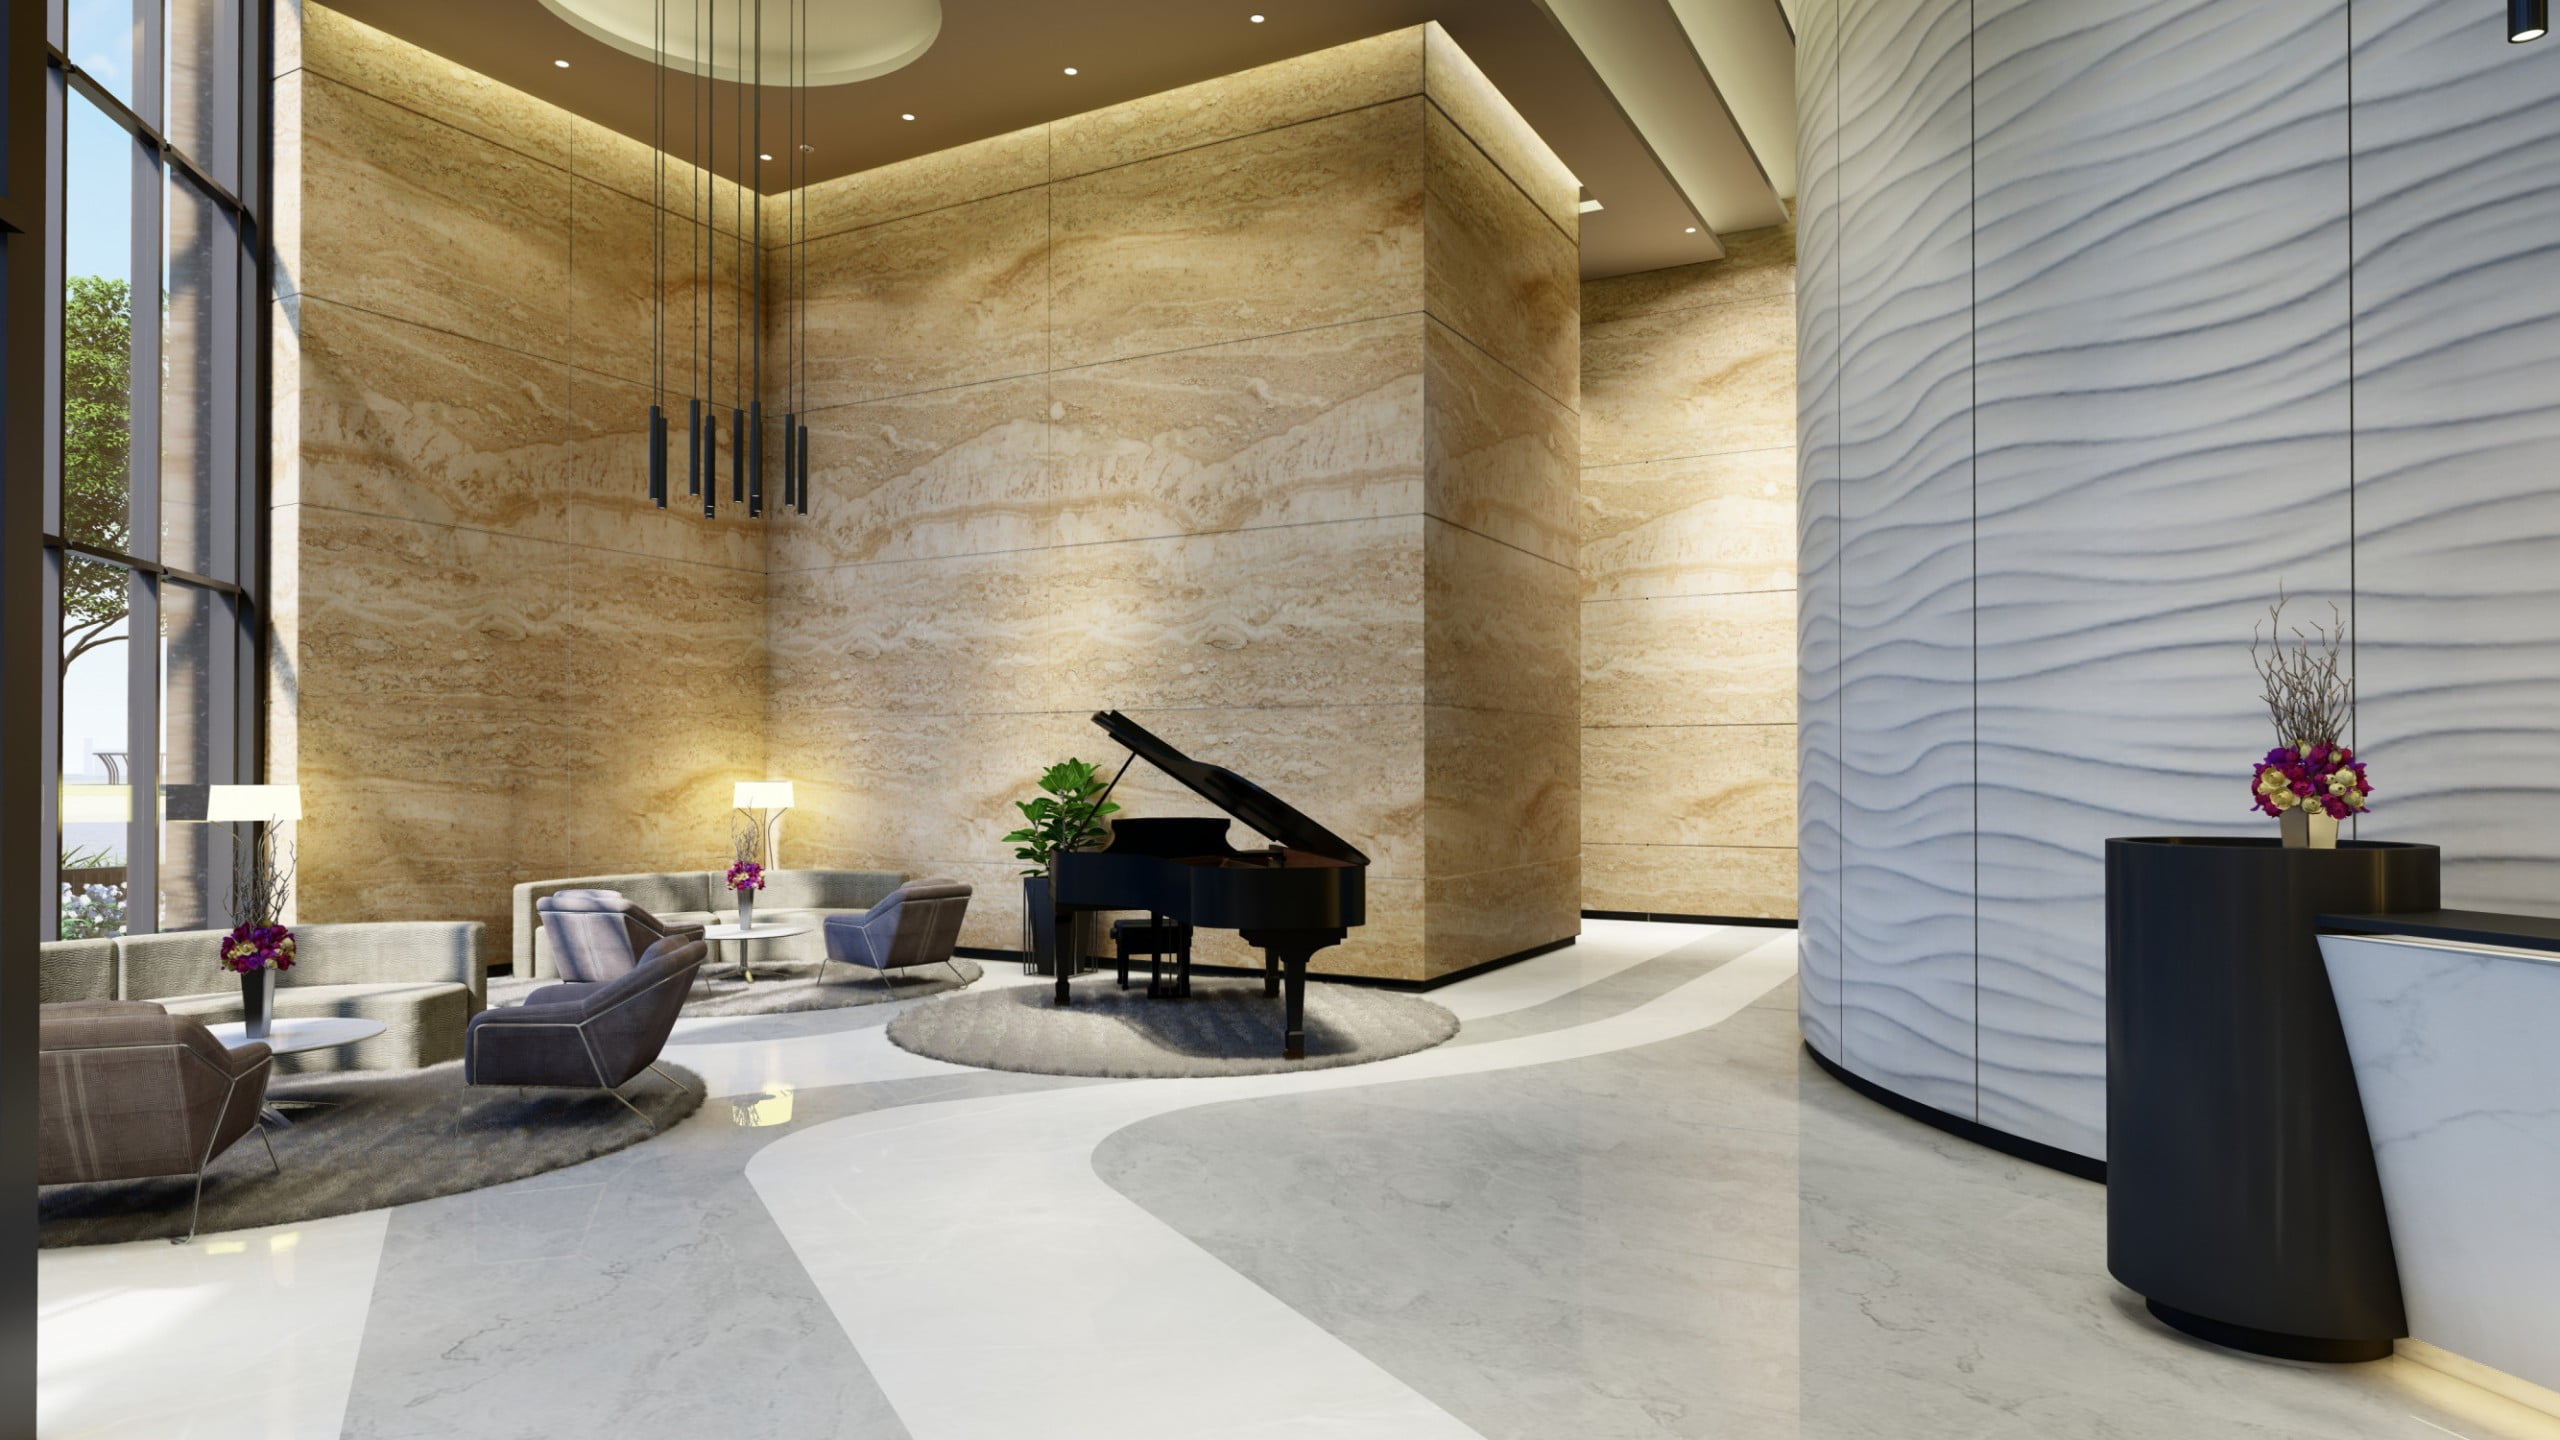 GROUND FLOOR MAIN LOBBY VIEWS 9 scaled - Immobilier Dubai